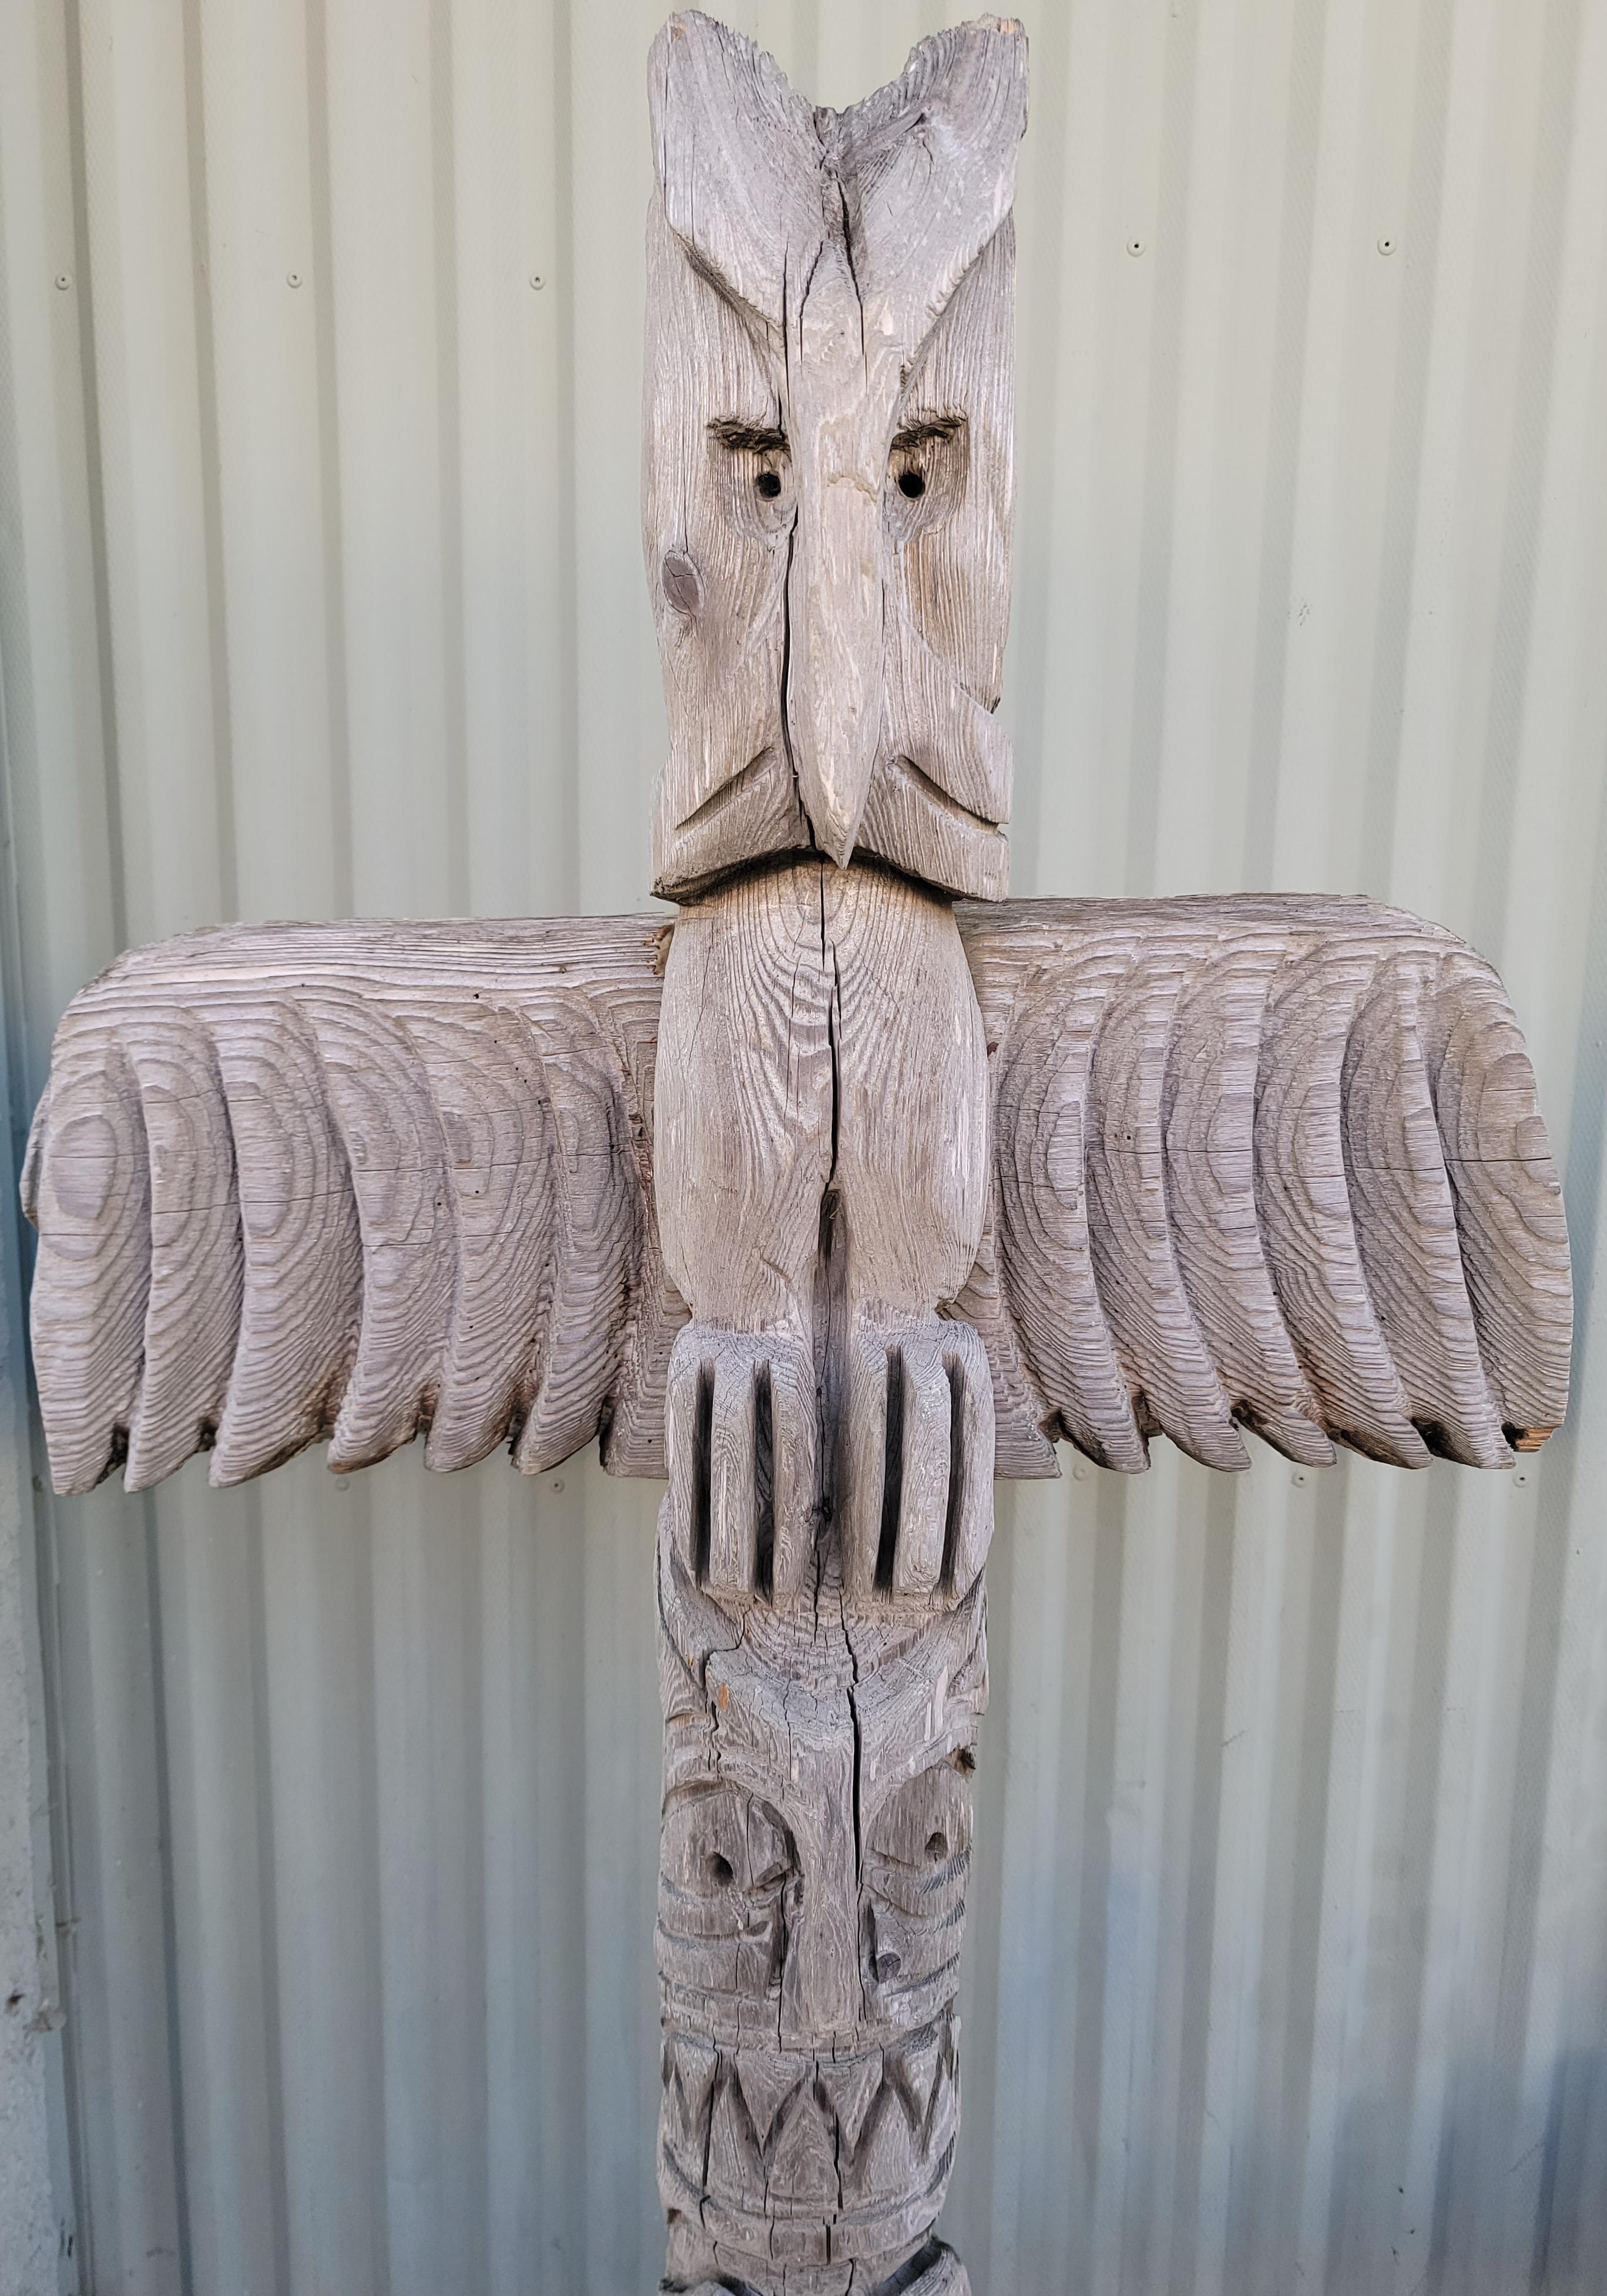 Cet étonnant totem amérindien antique provenait à l'origine d'un comptoir commercial au Nouveau Mexique. Nous l'avons obtenu d'une collection d'art populaire en Californie. Il est en très bon état d'origine et patiné tel qu'il a été trouvé,